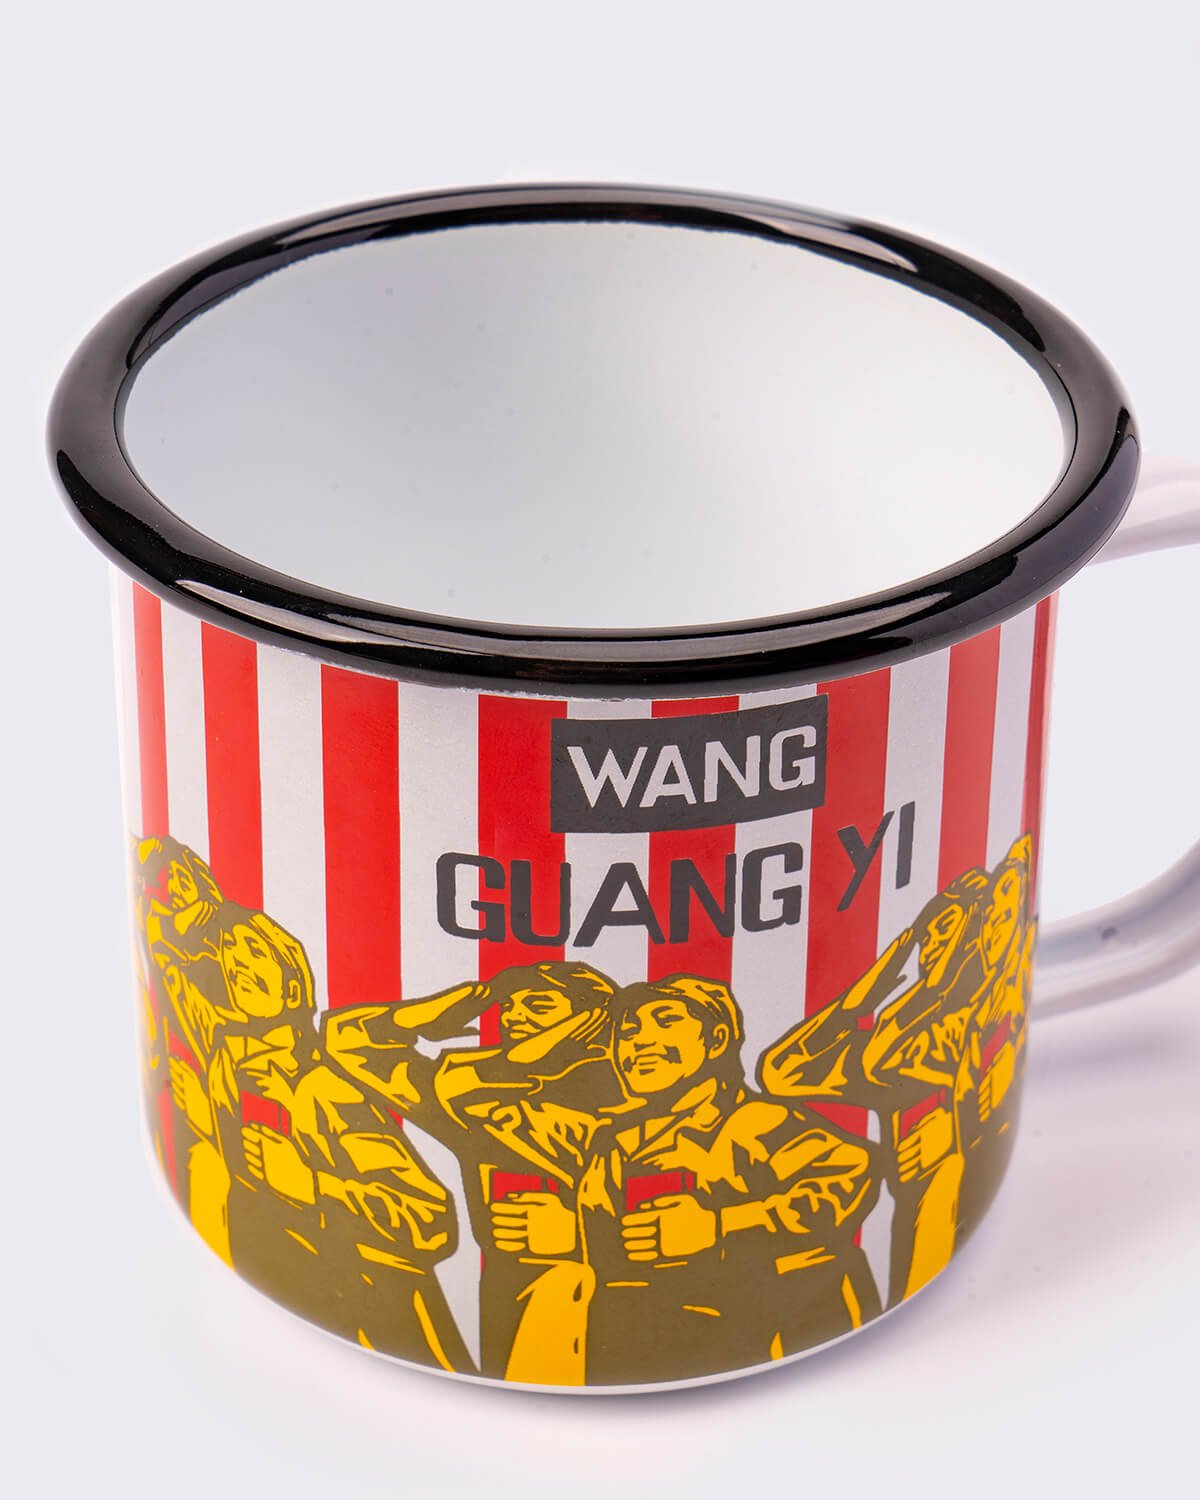 Wang Guangyi 'Great Criticism: Chanel' Enamel Mug